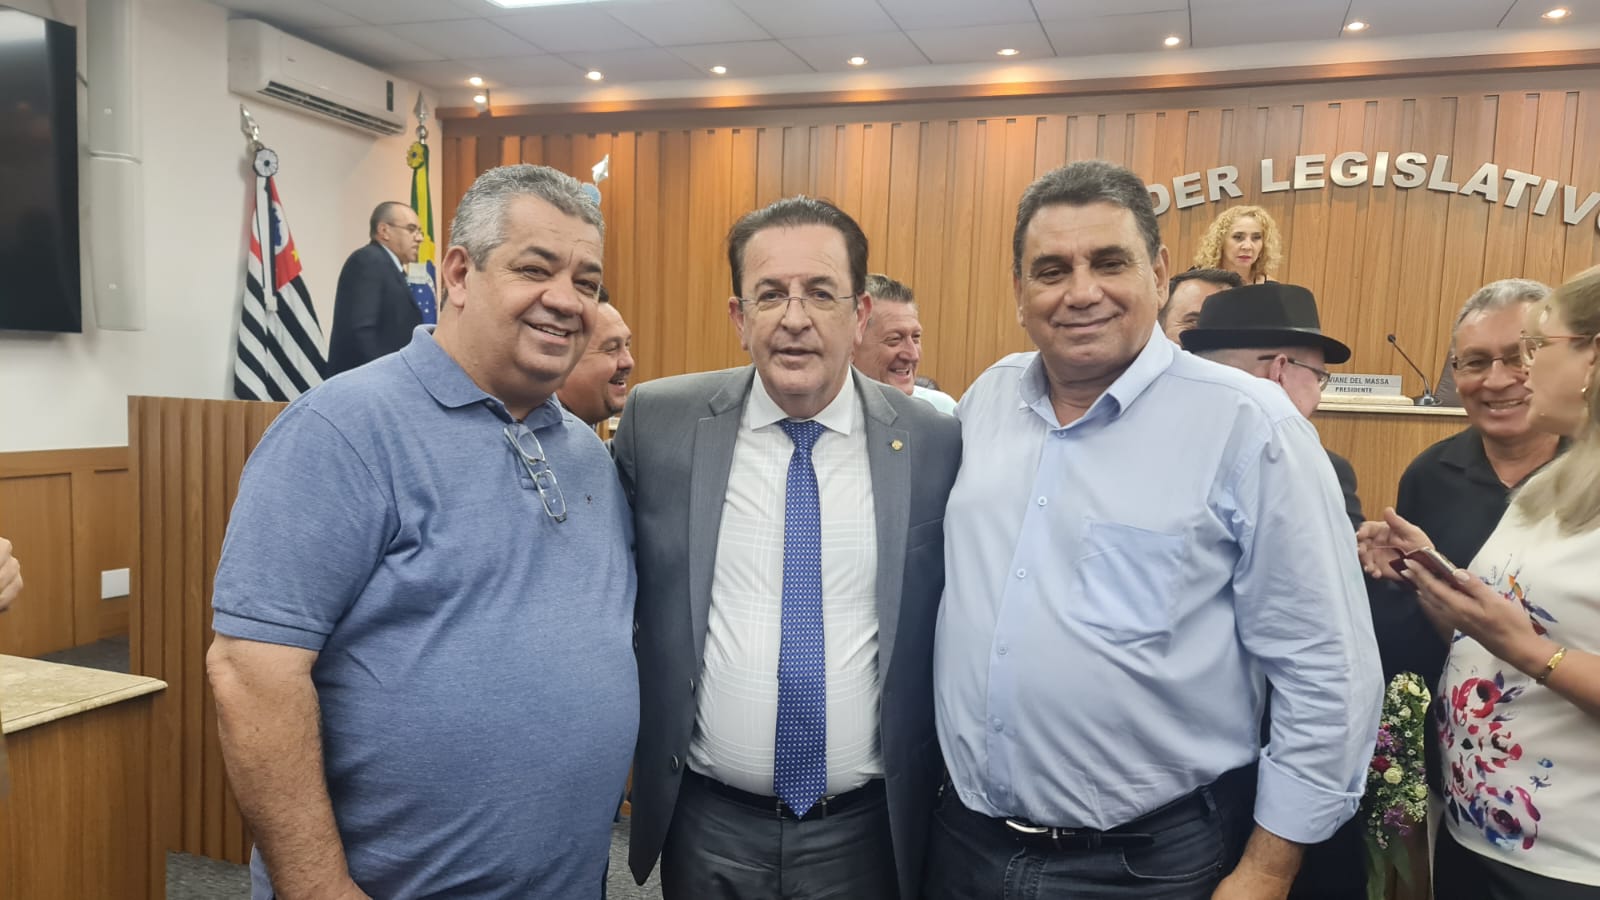 Foto: Deputado Federal Motta com Izaque Silva e Adauto Cardoso durante Solenidade na Câmara Municipal de Assis-SP